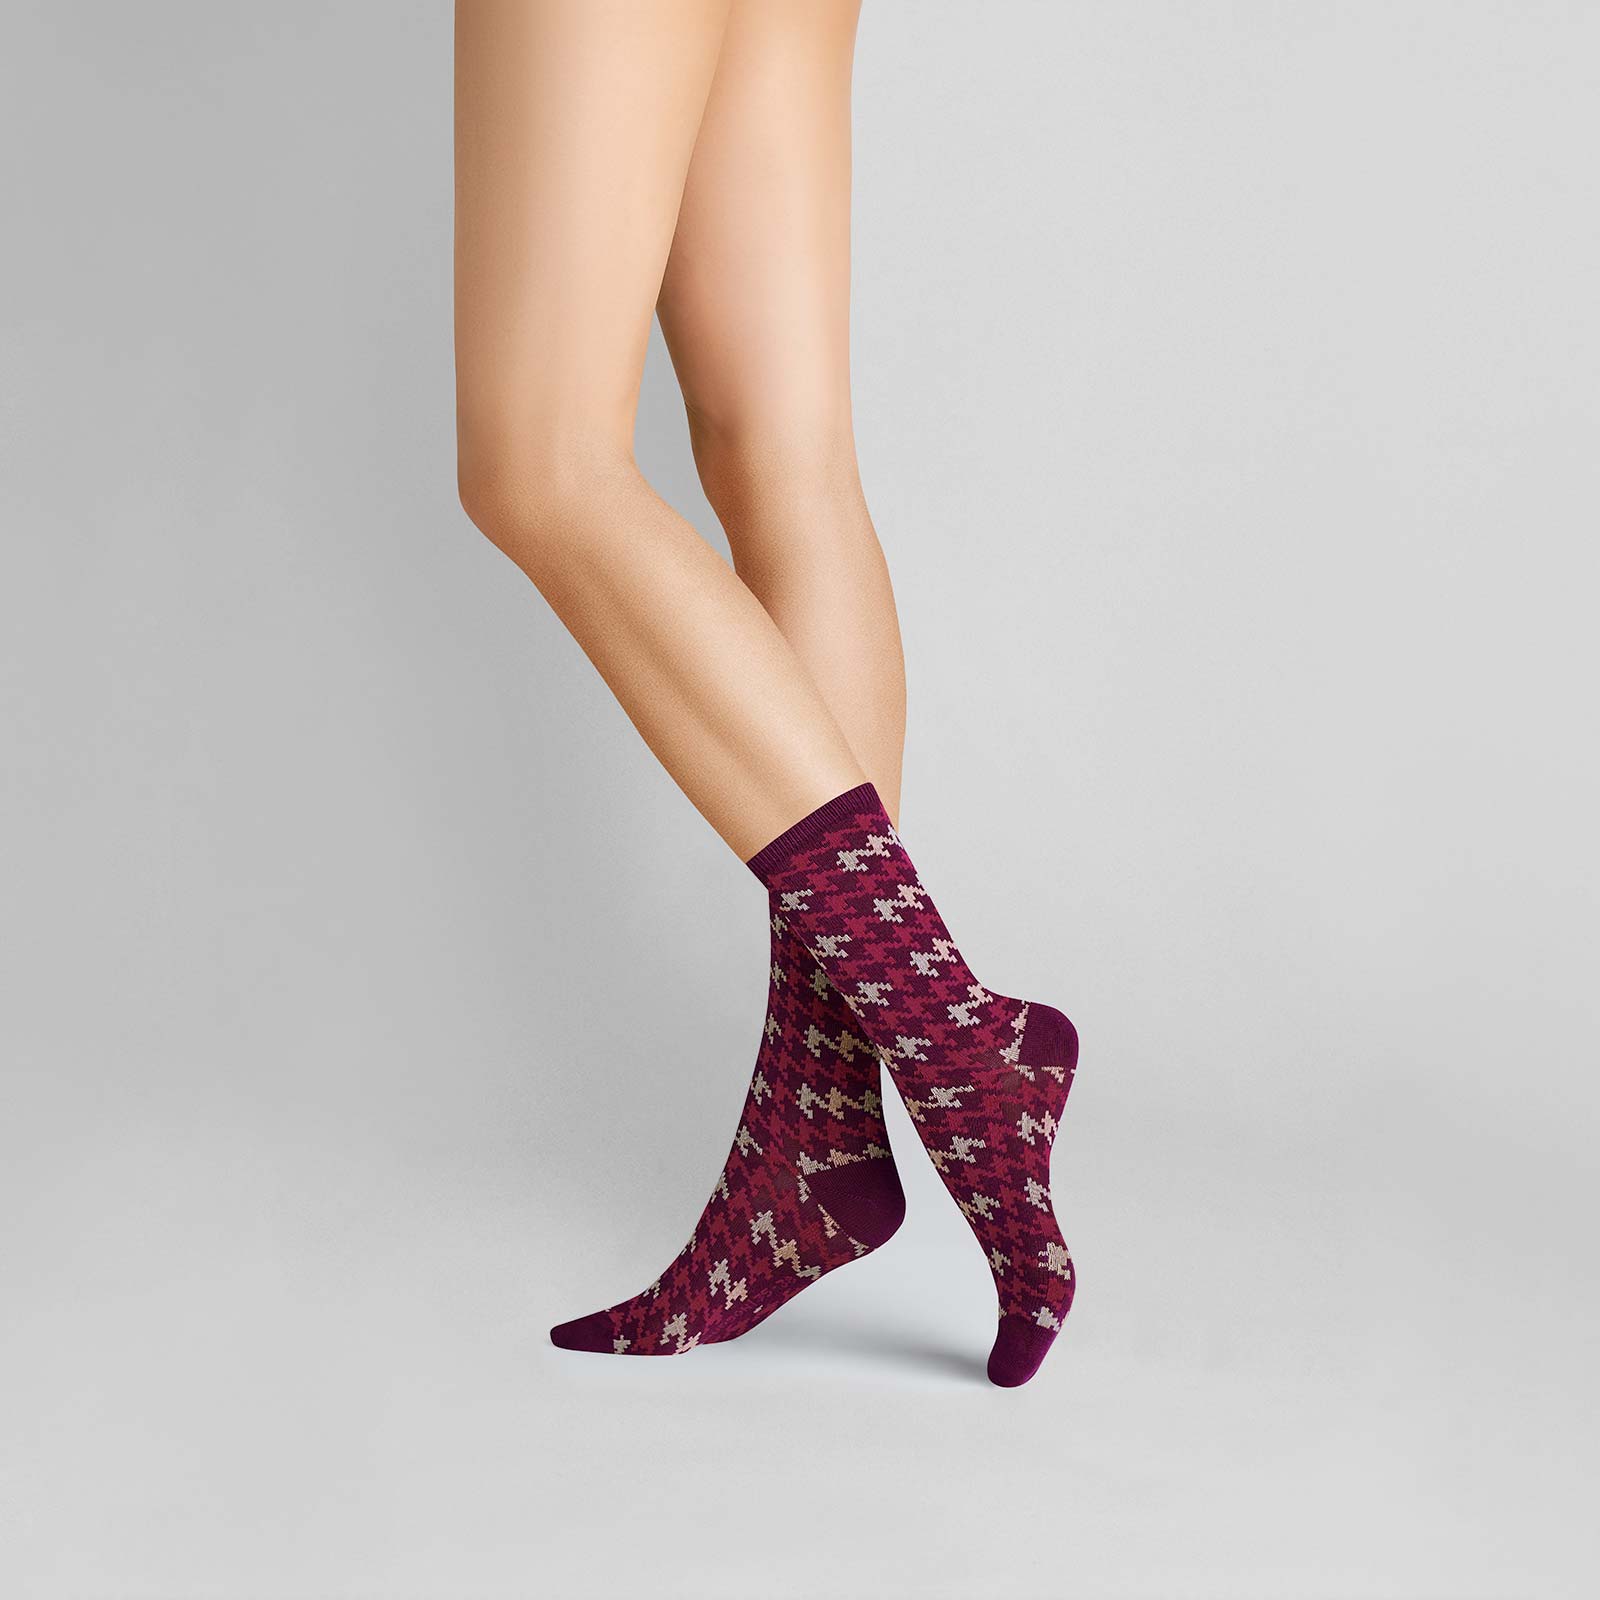 HUDSON Damen HOUNDSTOOTH -  35/38 - Damen Socken mit angesagtem Hahnentritt-Muster - Sweet lilac (Pink/Violett)